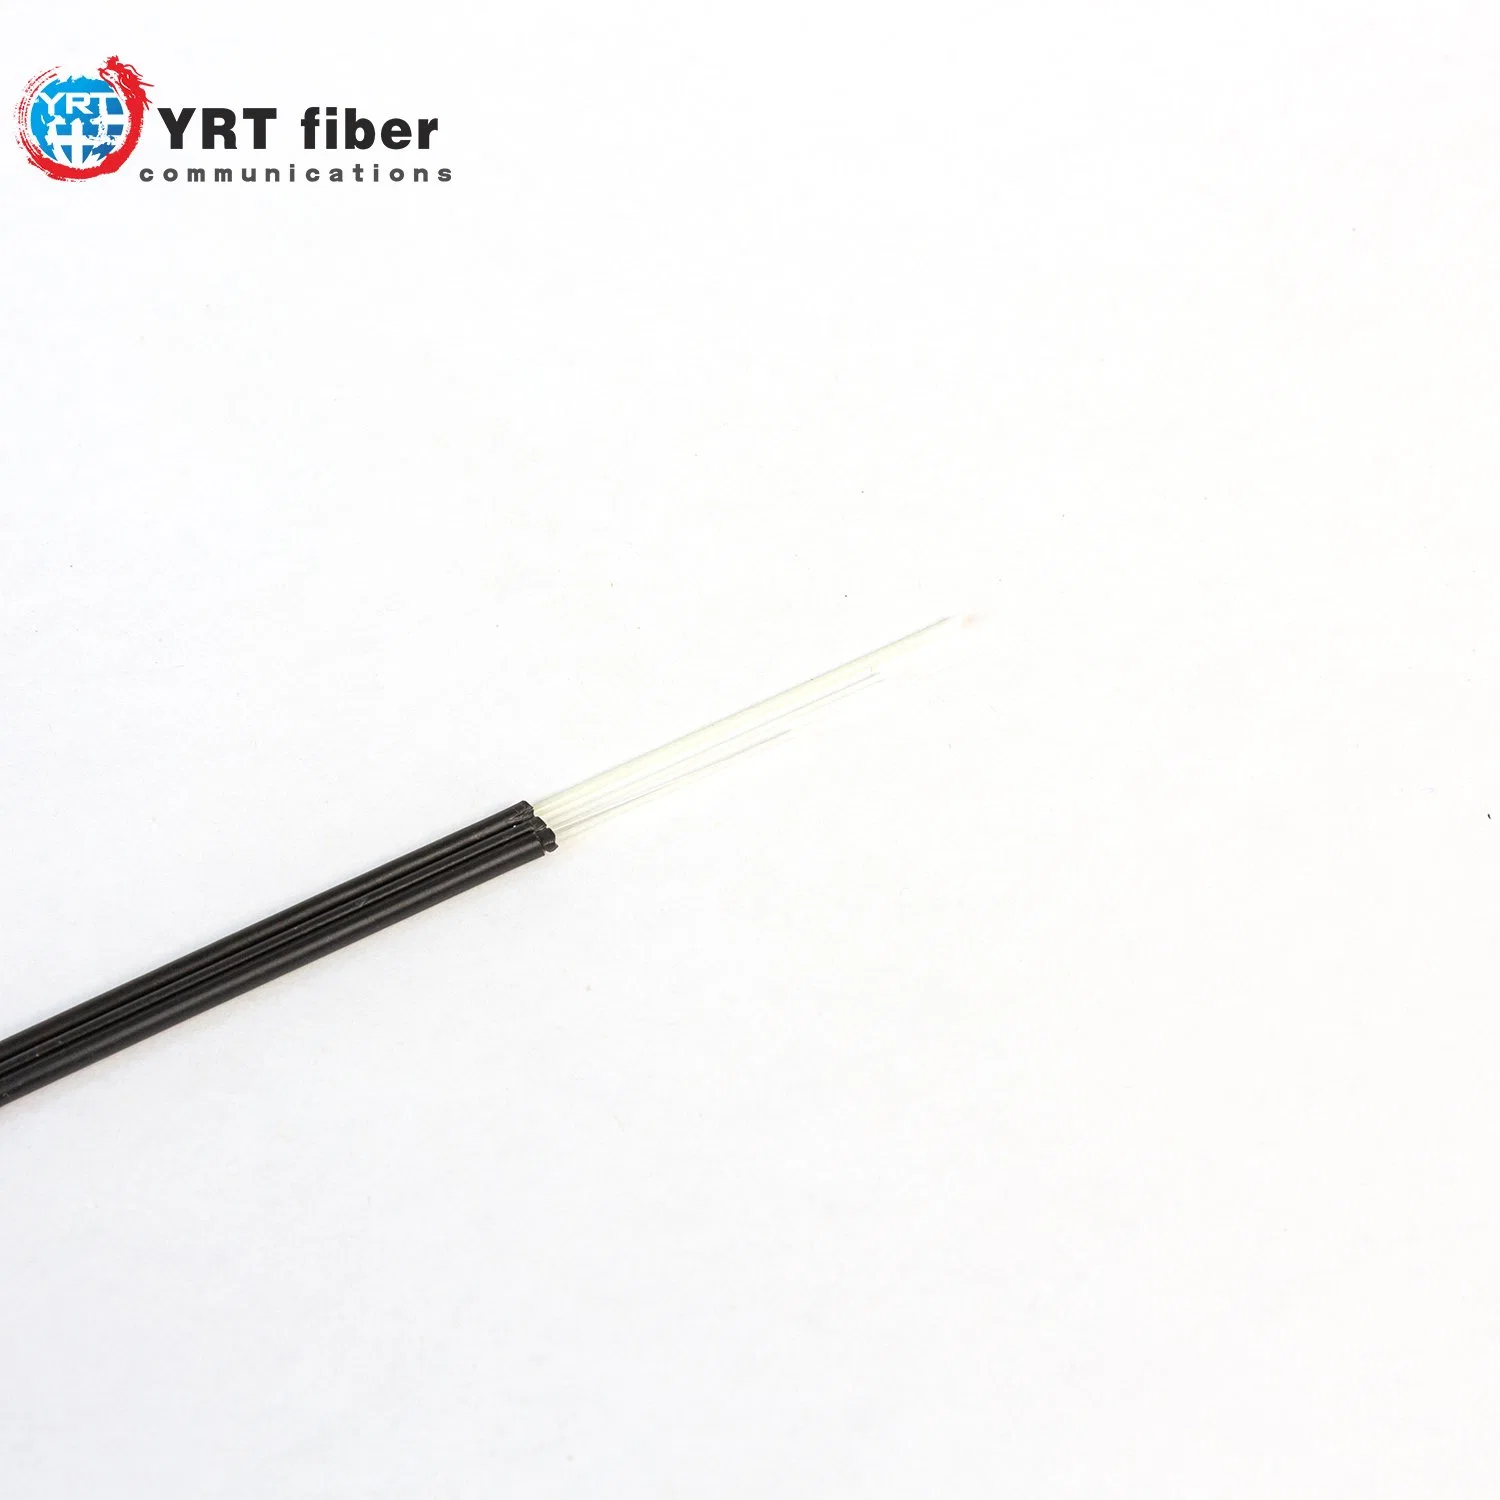 Câble à fibre optique ignifuge pour une utilisation en intérieur pour la communication.